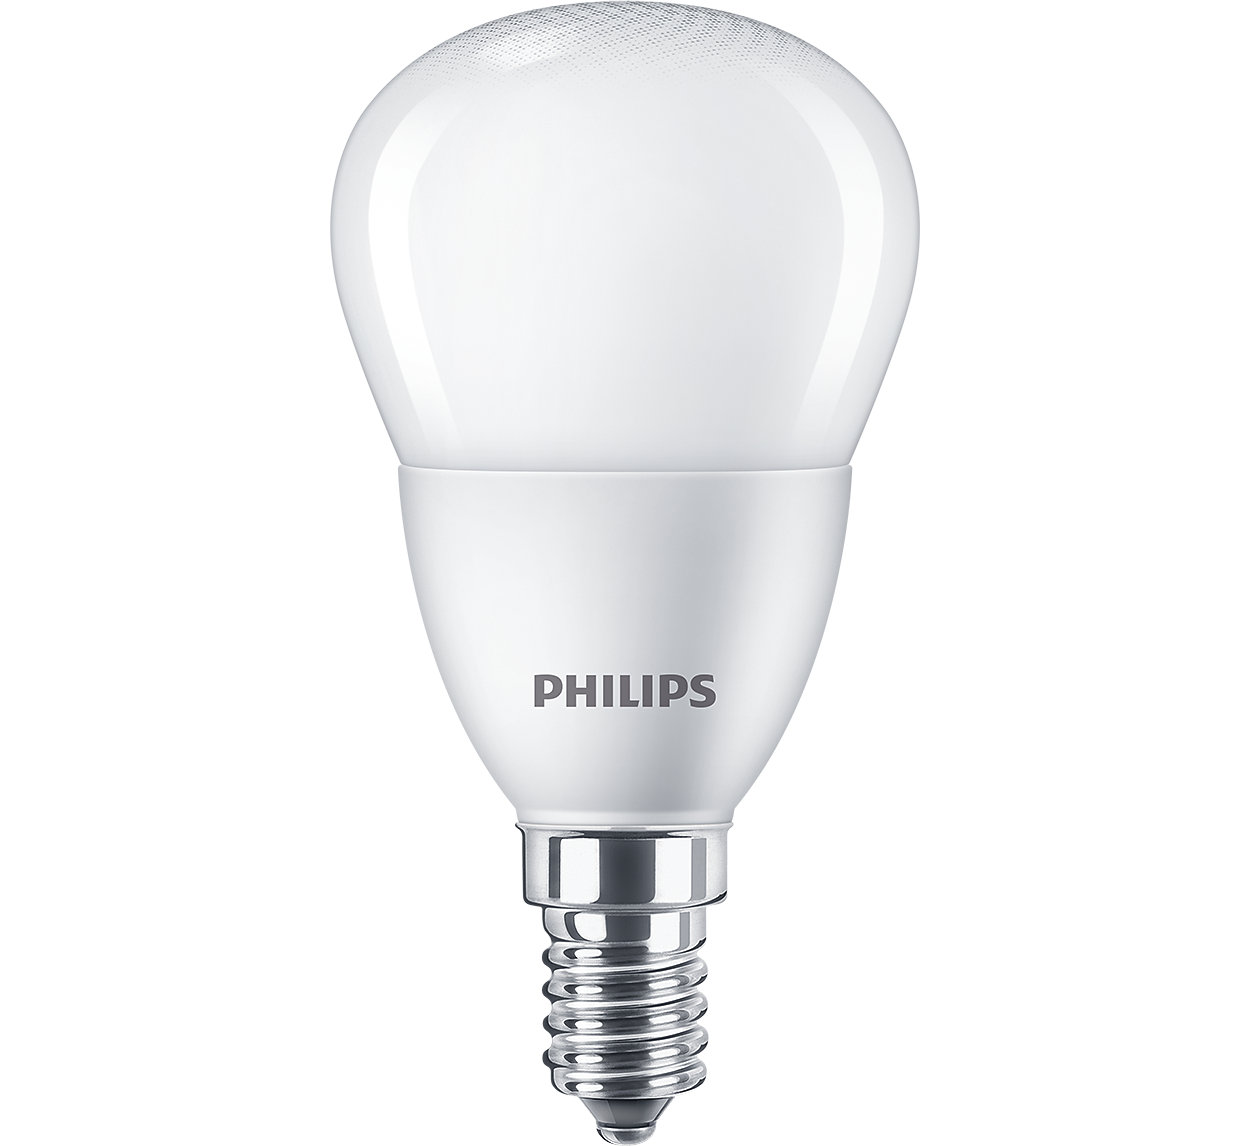 เพิ่มความงดงามให้บ้านของคุณด้วยหลอดไฟกลม LED ของ Philips